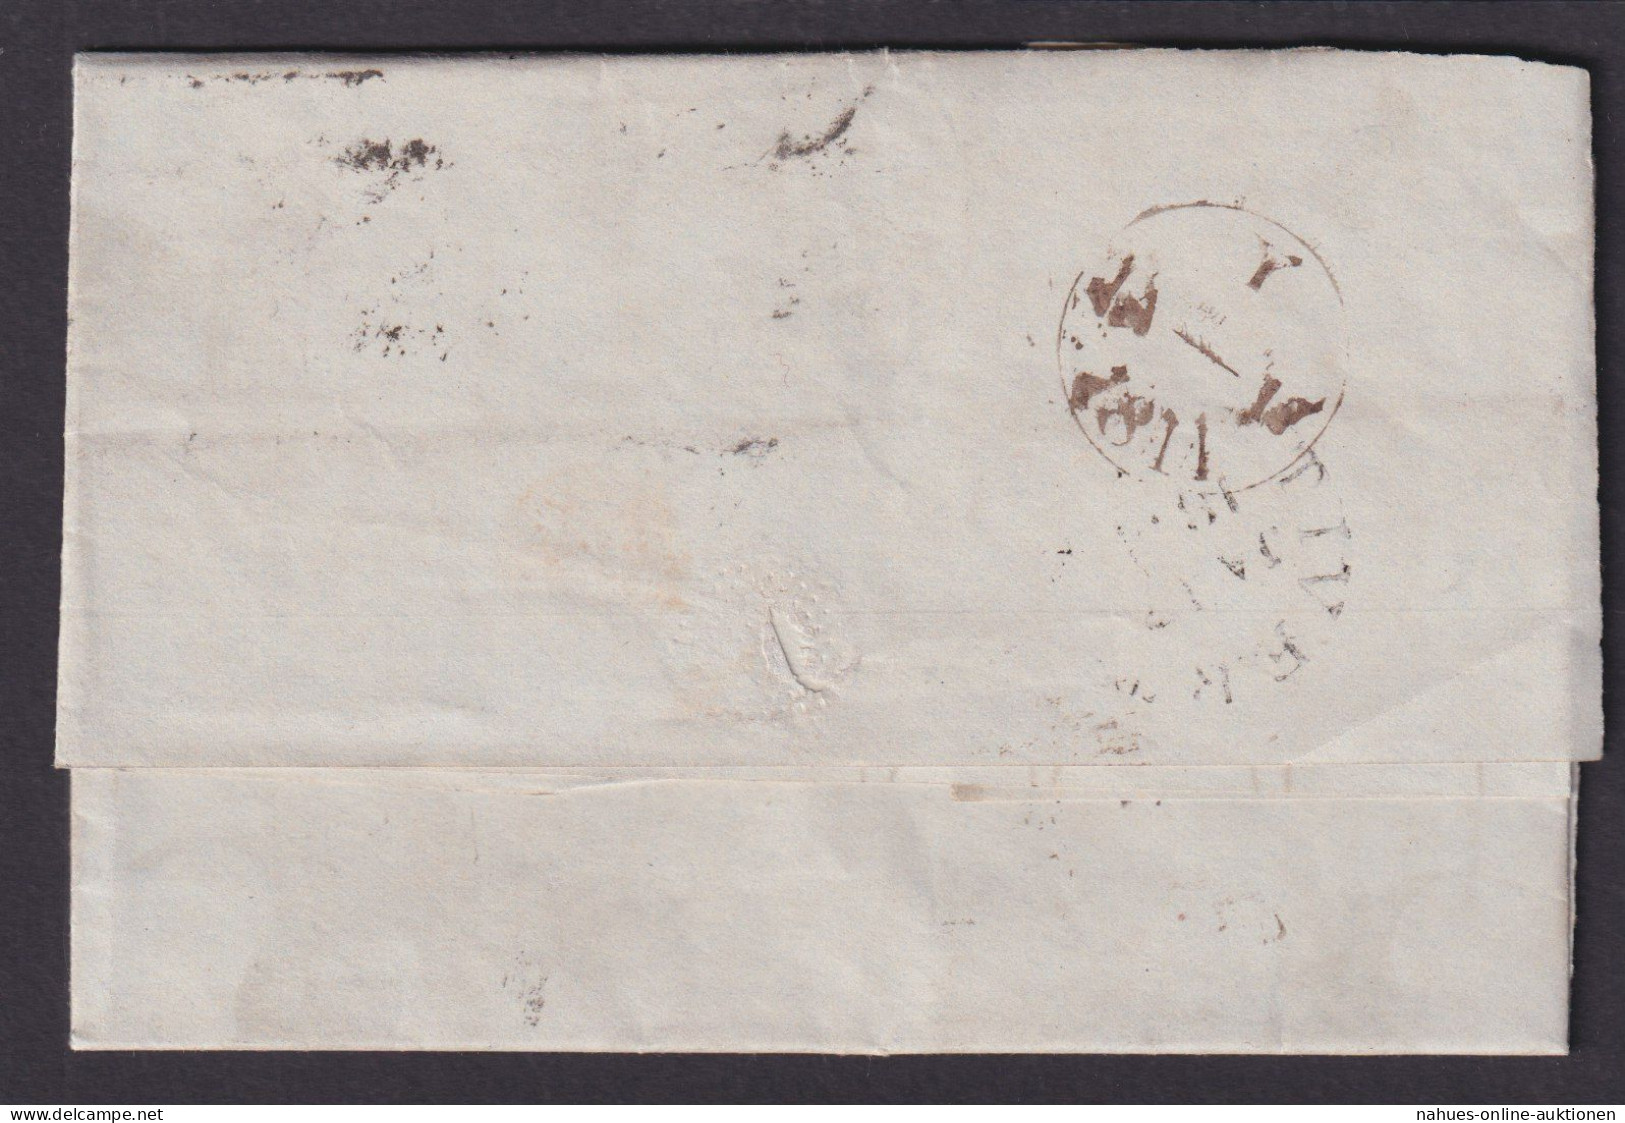 Großbritannien Brief EF 3 MK Victoria Selt. Malteserkreuz Mit Nr. 3 Kat. 350,00 - Lettres & Documents